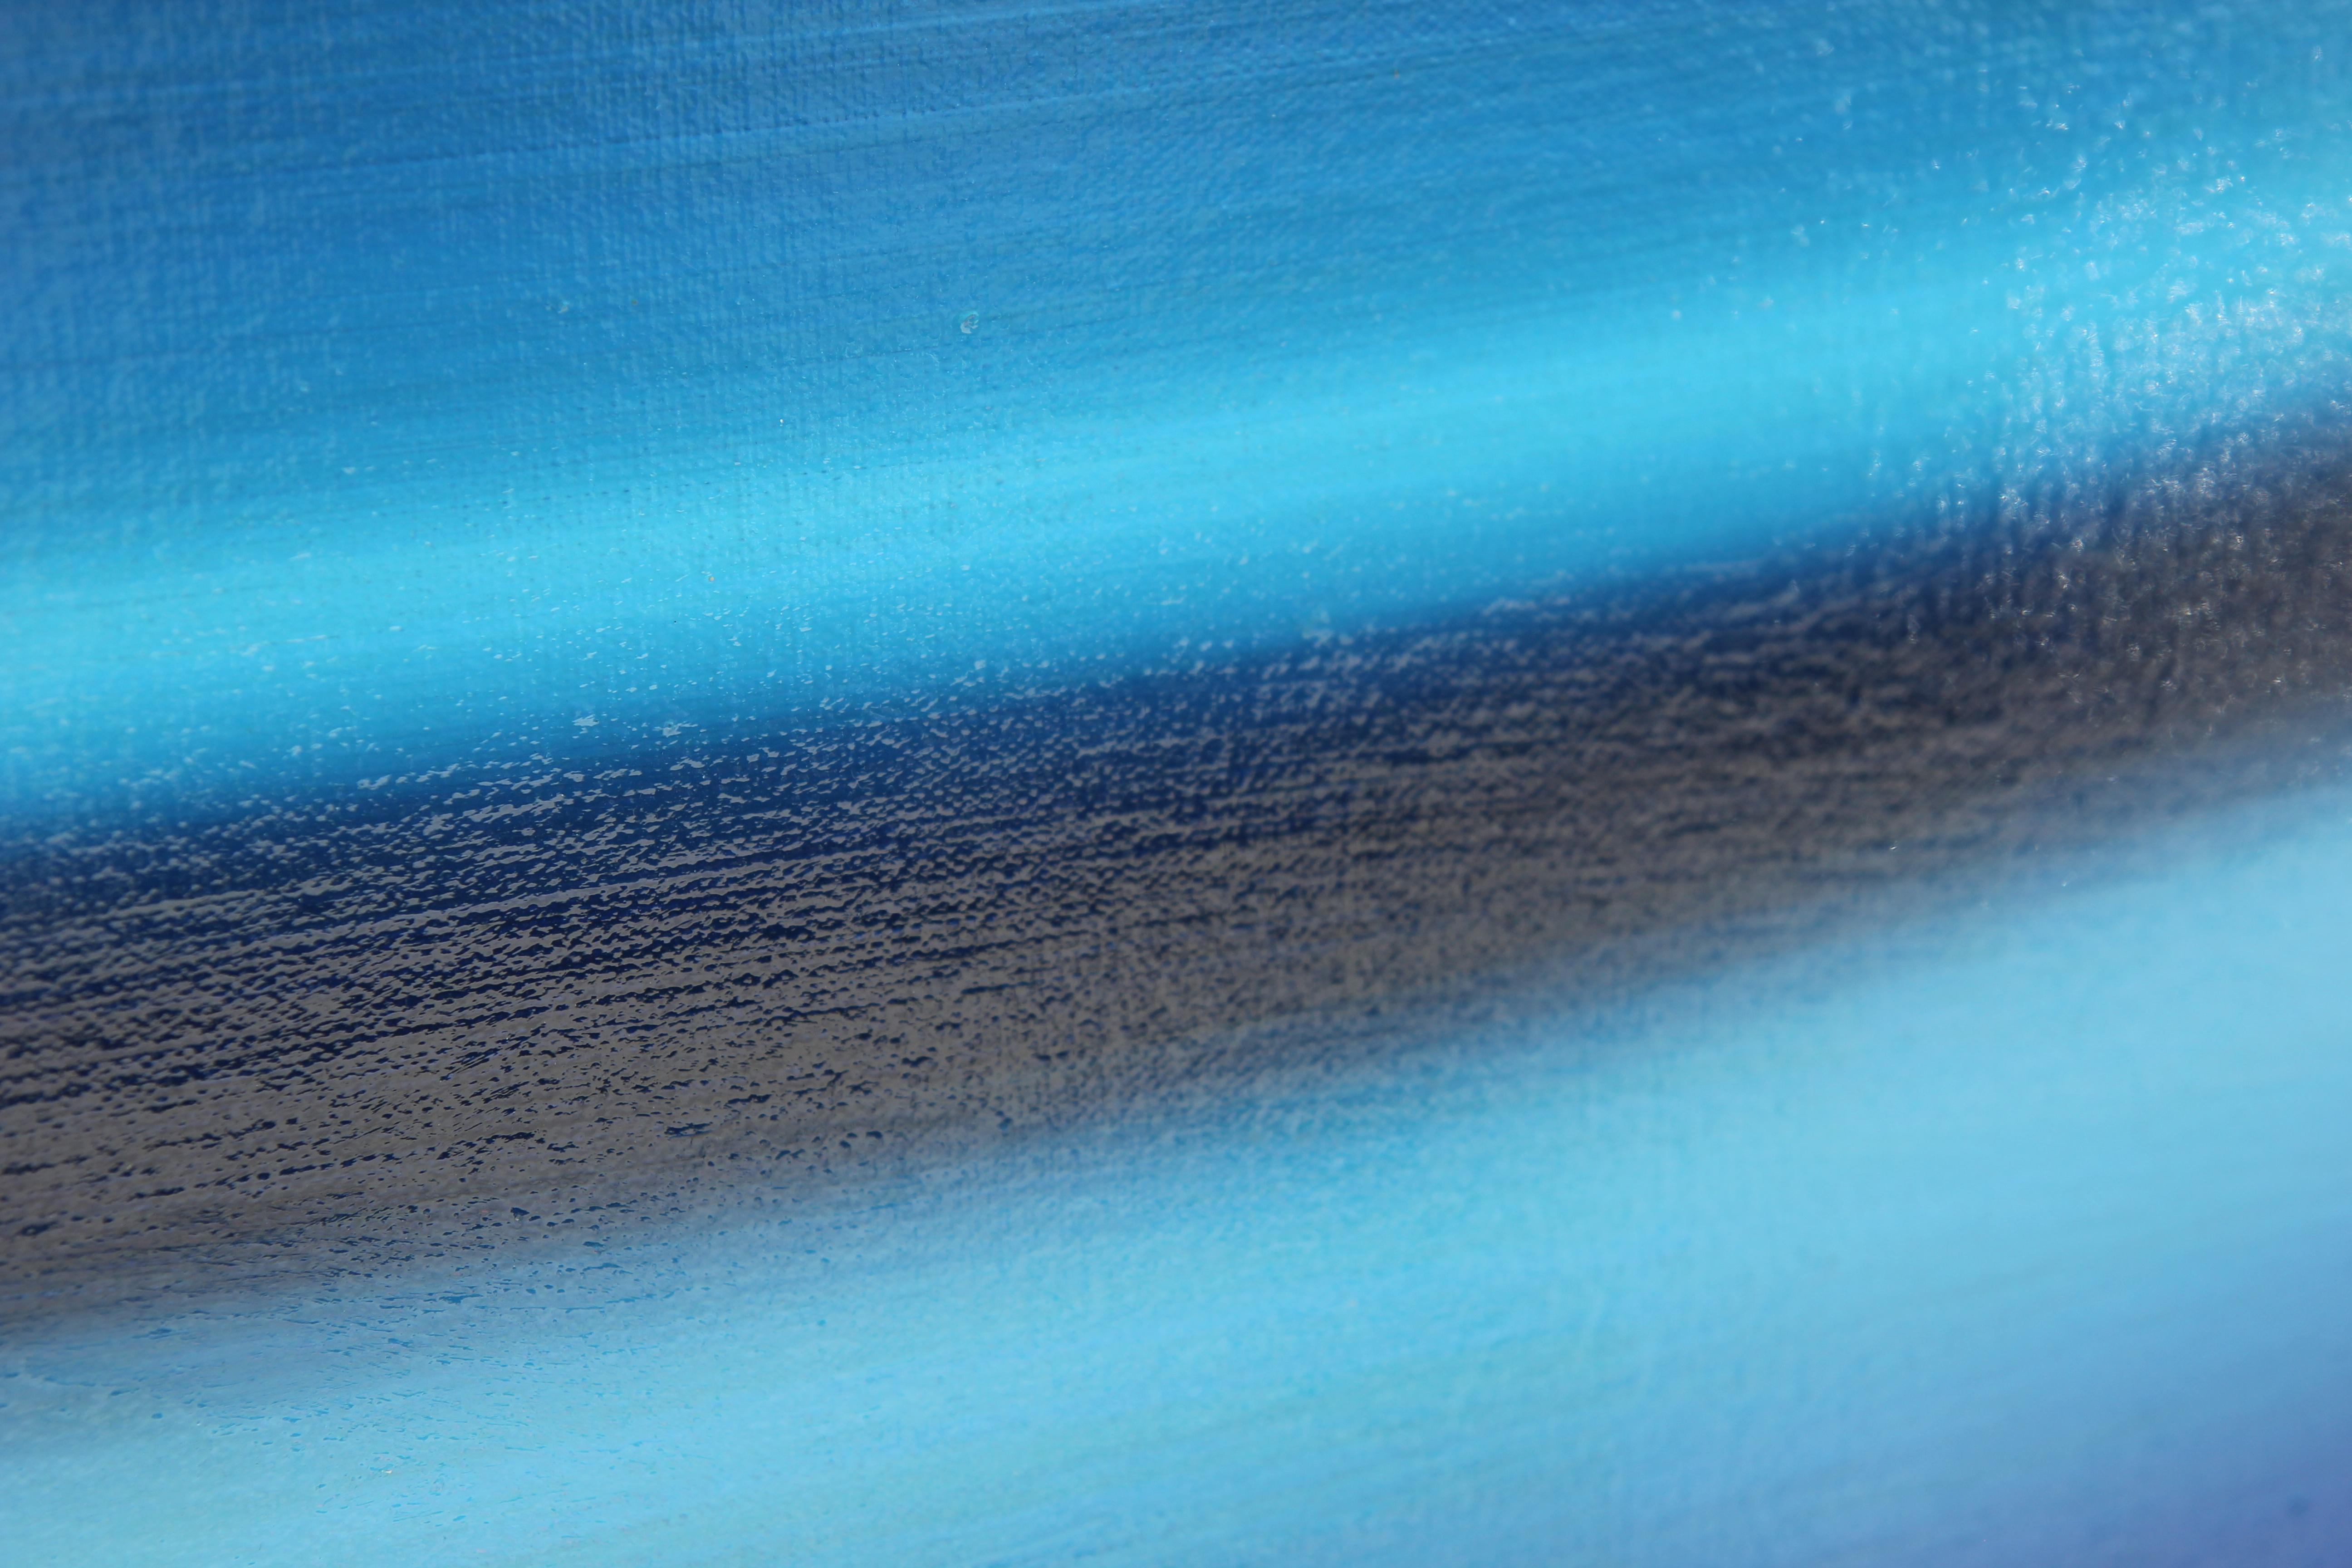 Fotorealistische Nahaufnahme eines klassischen blauen Muscle Cars. Kelley gelingt es, die subtilen Kurven des Fahrzeugs durch ihren dynamischen Einsatz von Licht und Schatten einzufangen. Signiert und betitelt auf der Rückseite. Derzeit nicht